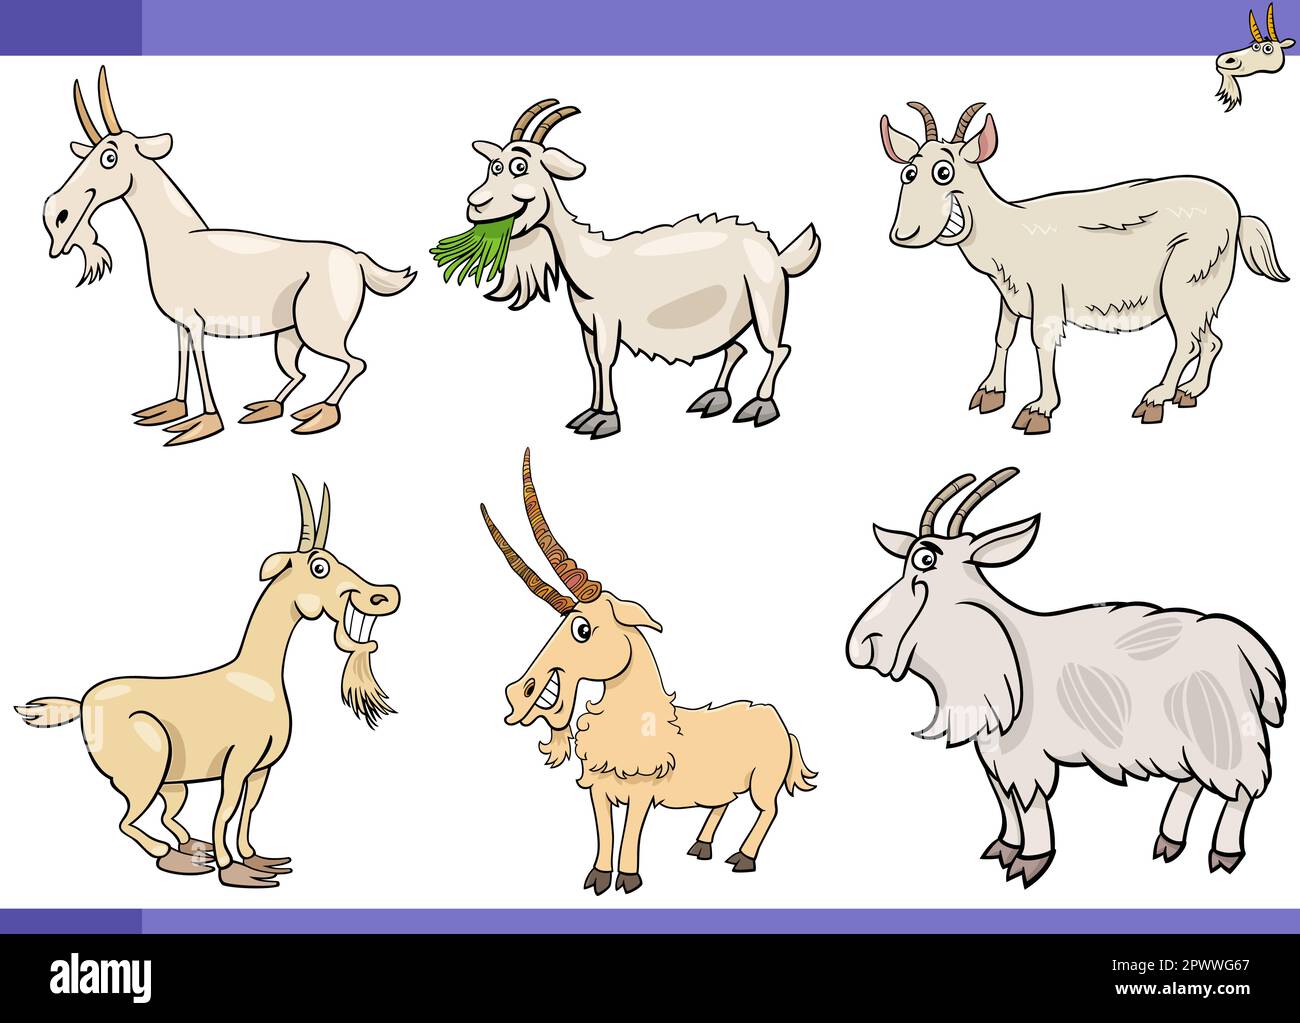 Ilustración de dibujos animados de animales de granja de cabras conjunto de personajes cómicos Ilustración del Vector